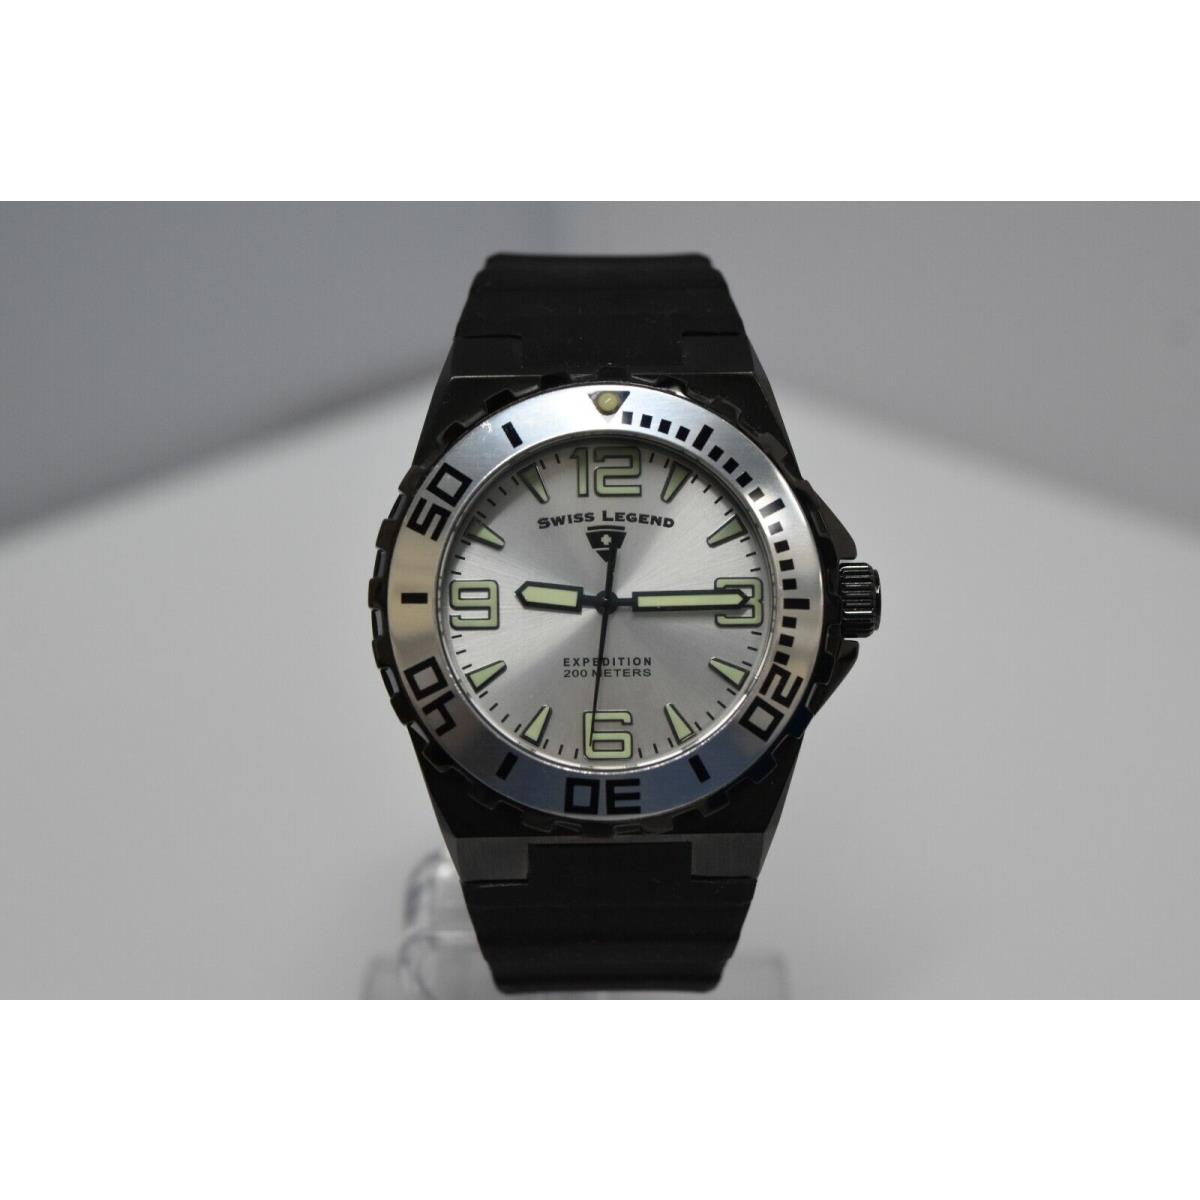 Swiss Legend Expedition Sapphitek 48mm 200M SL-10008 Watch